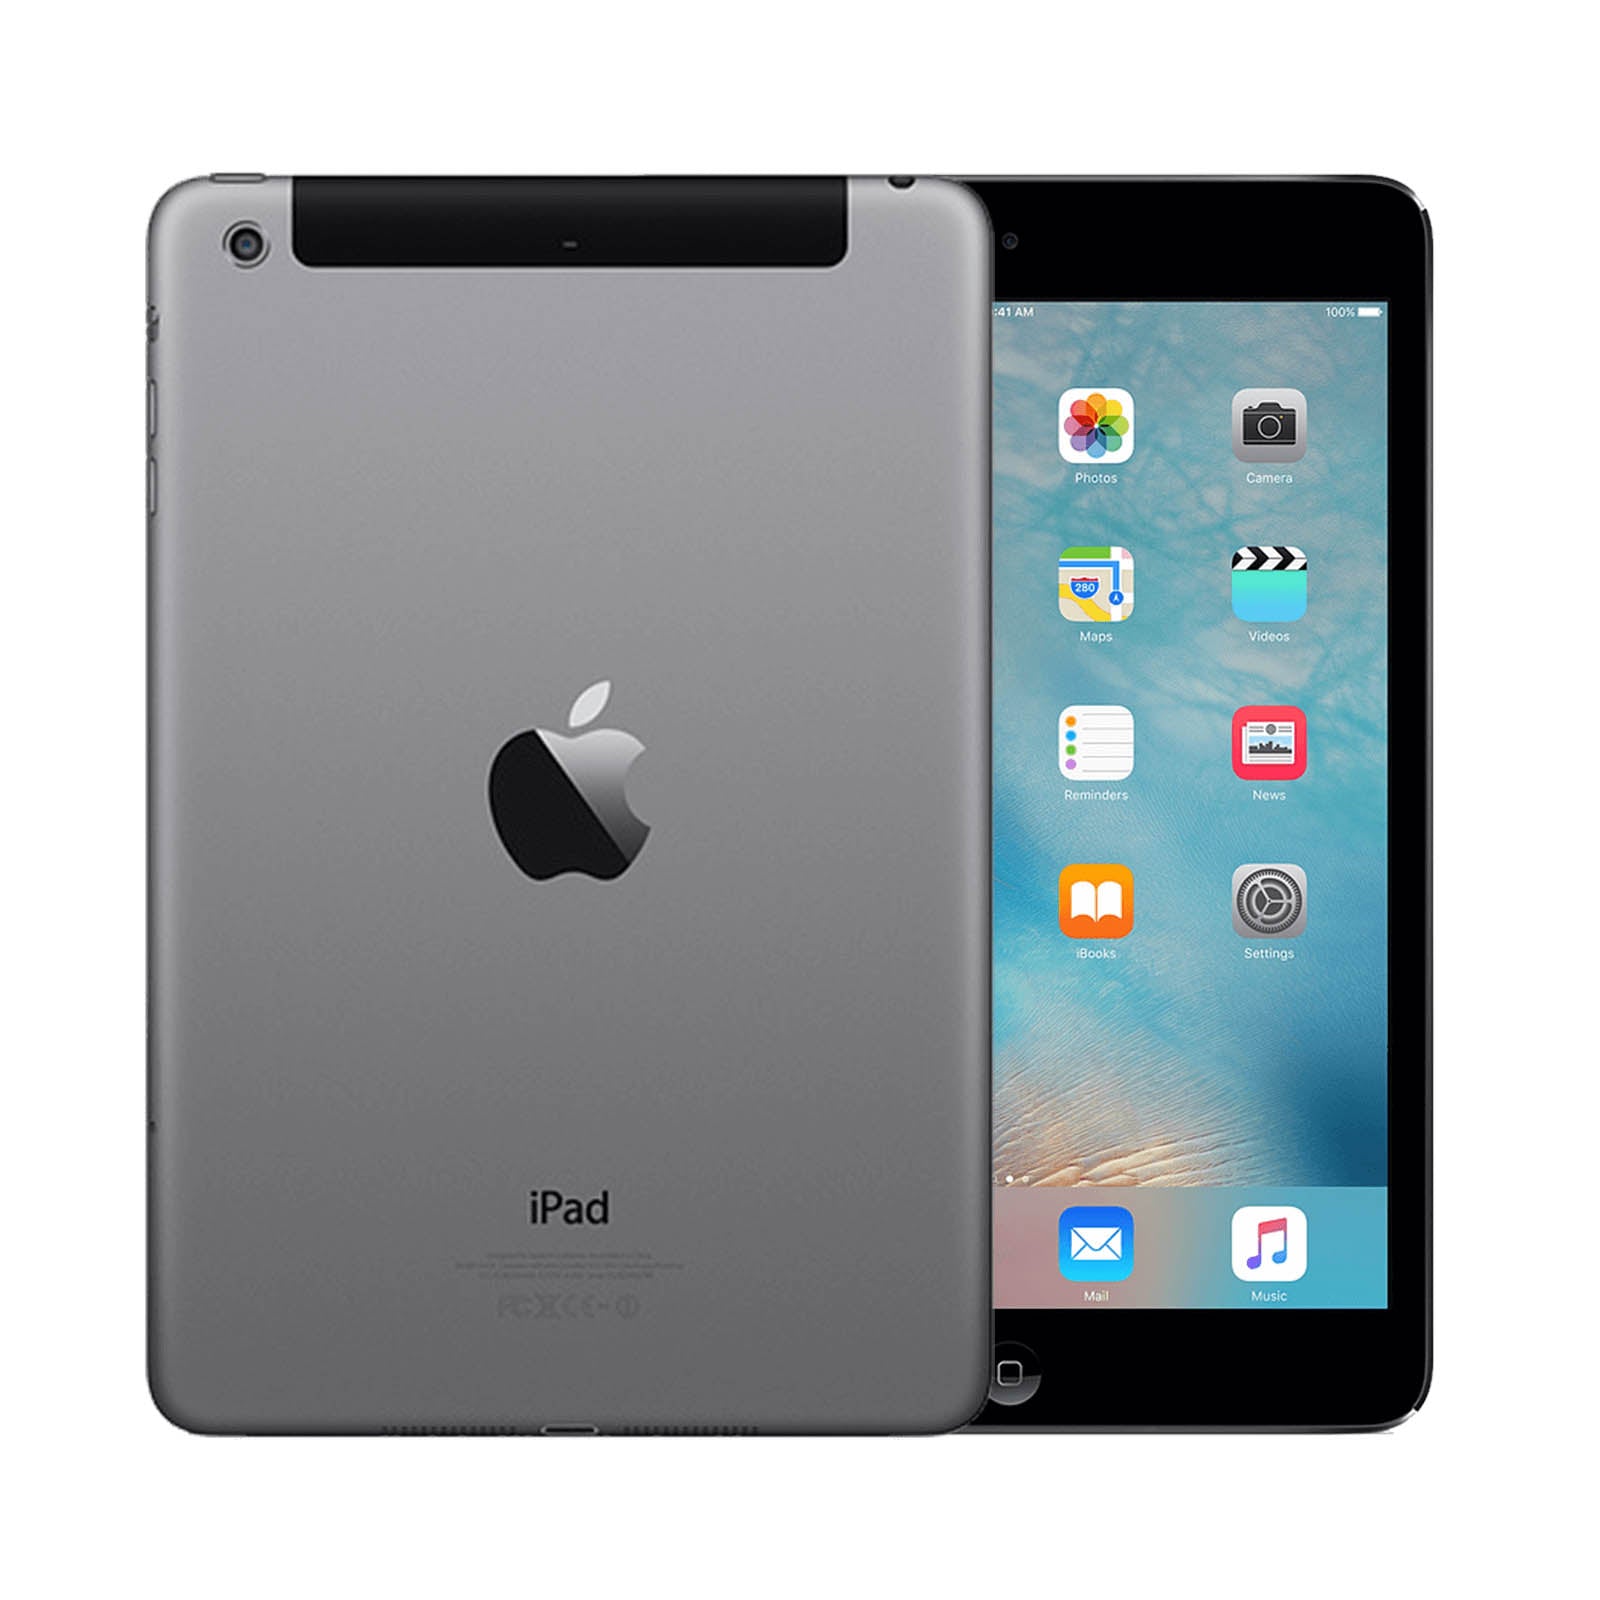 Apple iPad mini 2 32GB Black Fair - Unlocked